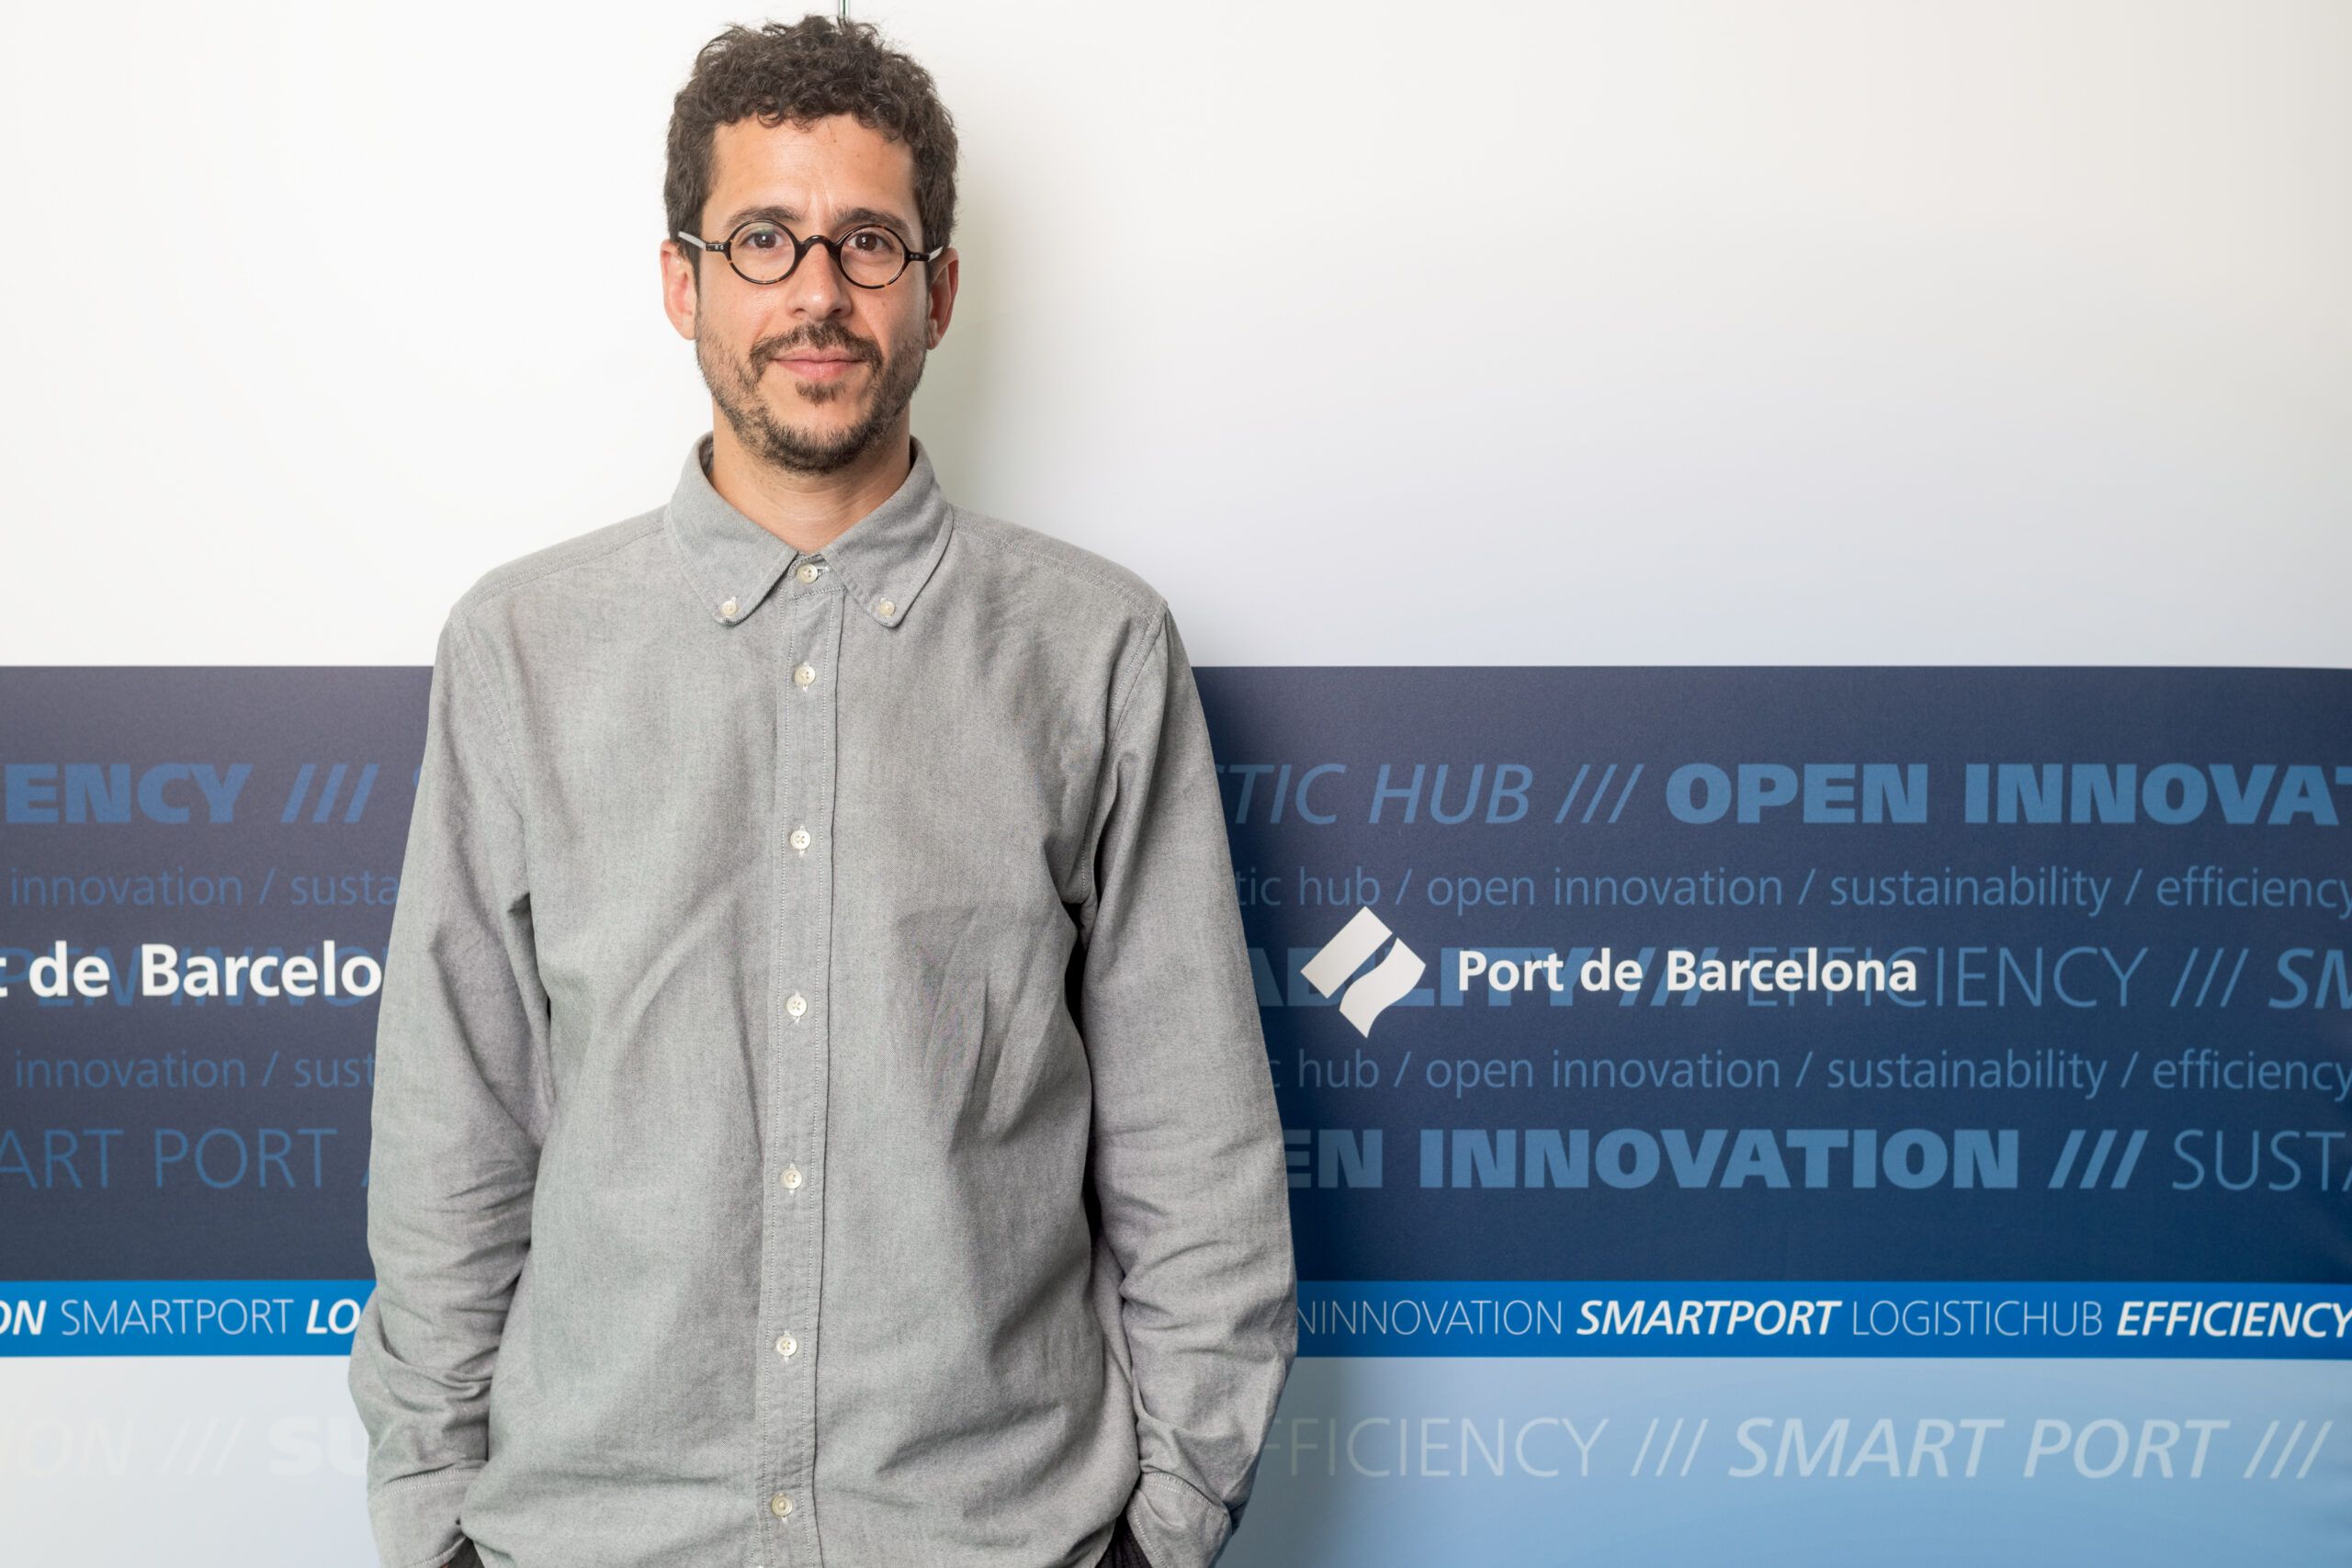 El director técnico de la Fundación BCN Port Innovation cree que la innovación no depende exclusivamente de la tecnología. (PierNext/Claudio Valdés)